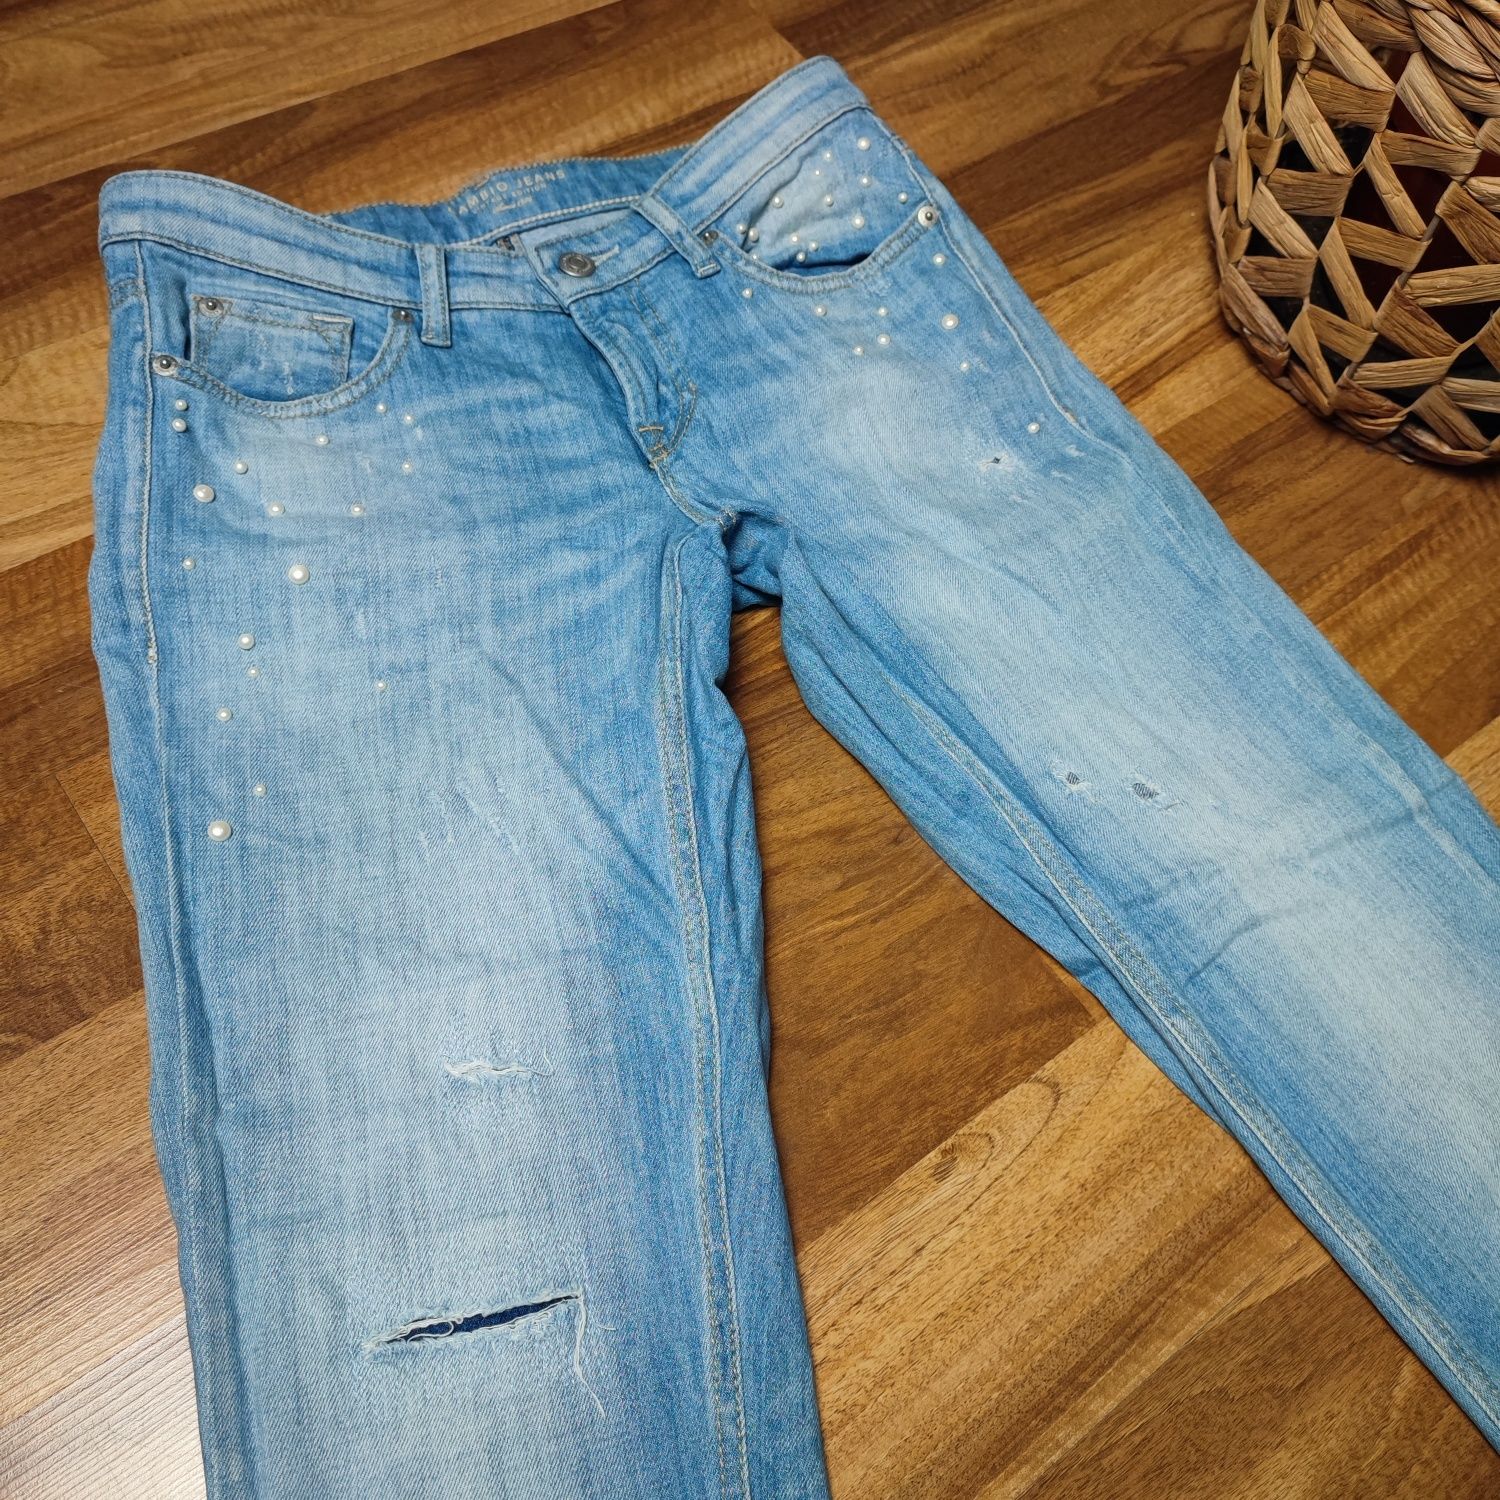 Jeansy damskie, CAMBIO jeans, perełki ozdobne, długie spodnie